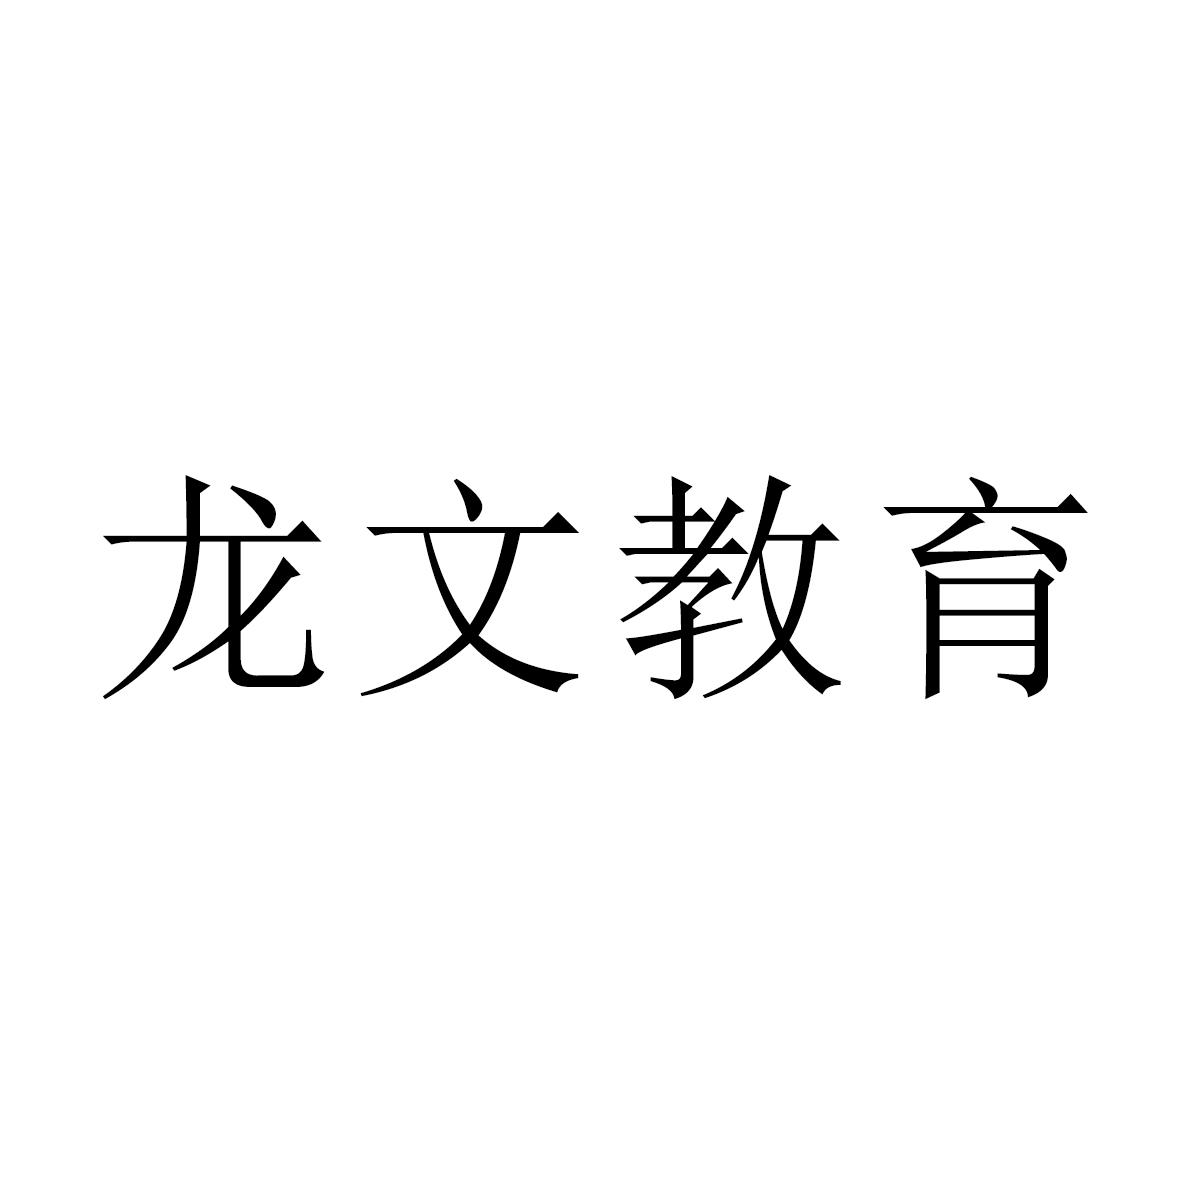 龙文教育logo图片